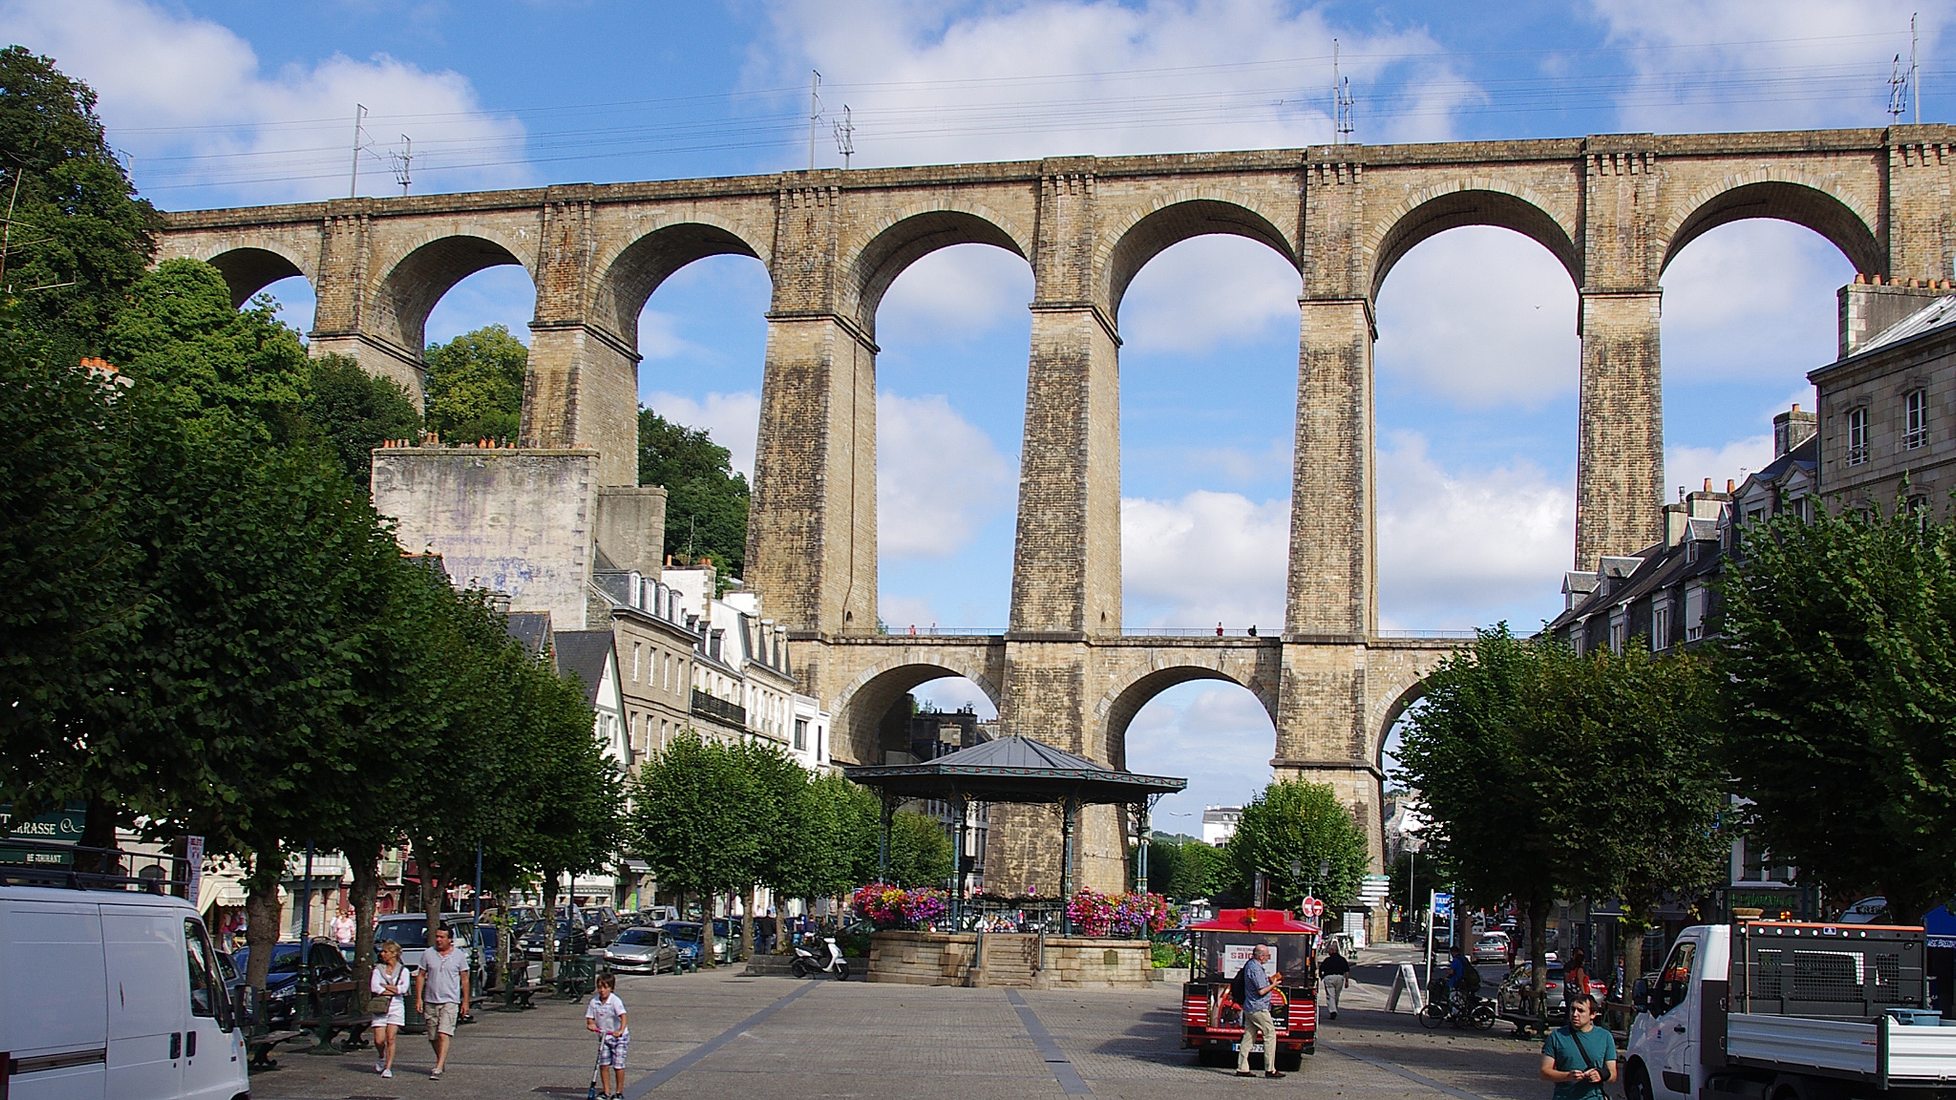 Viaduct de Morlaix, France